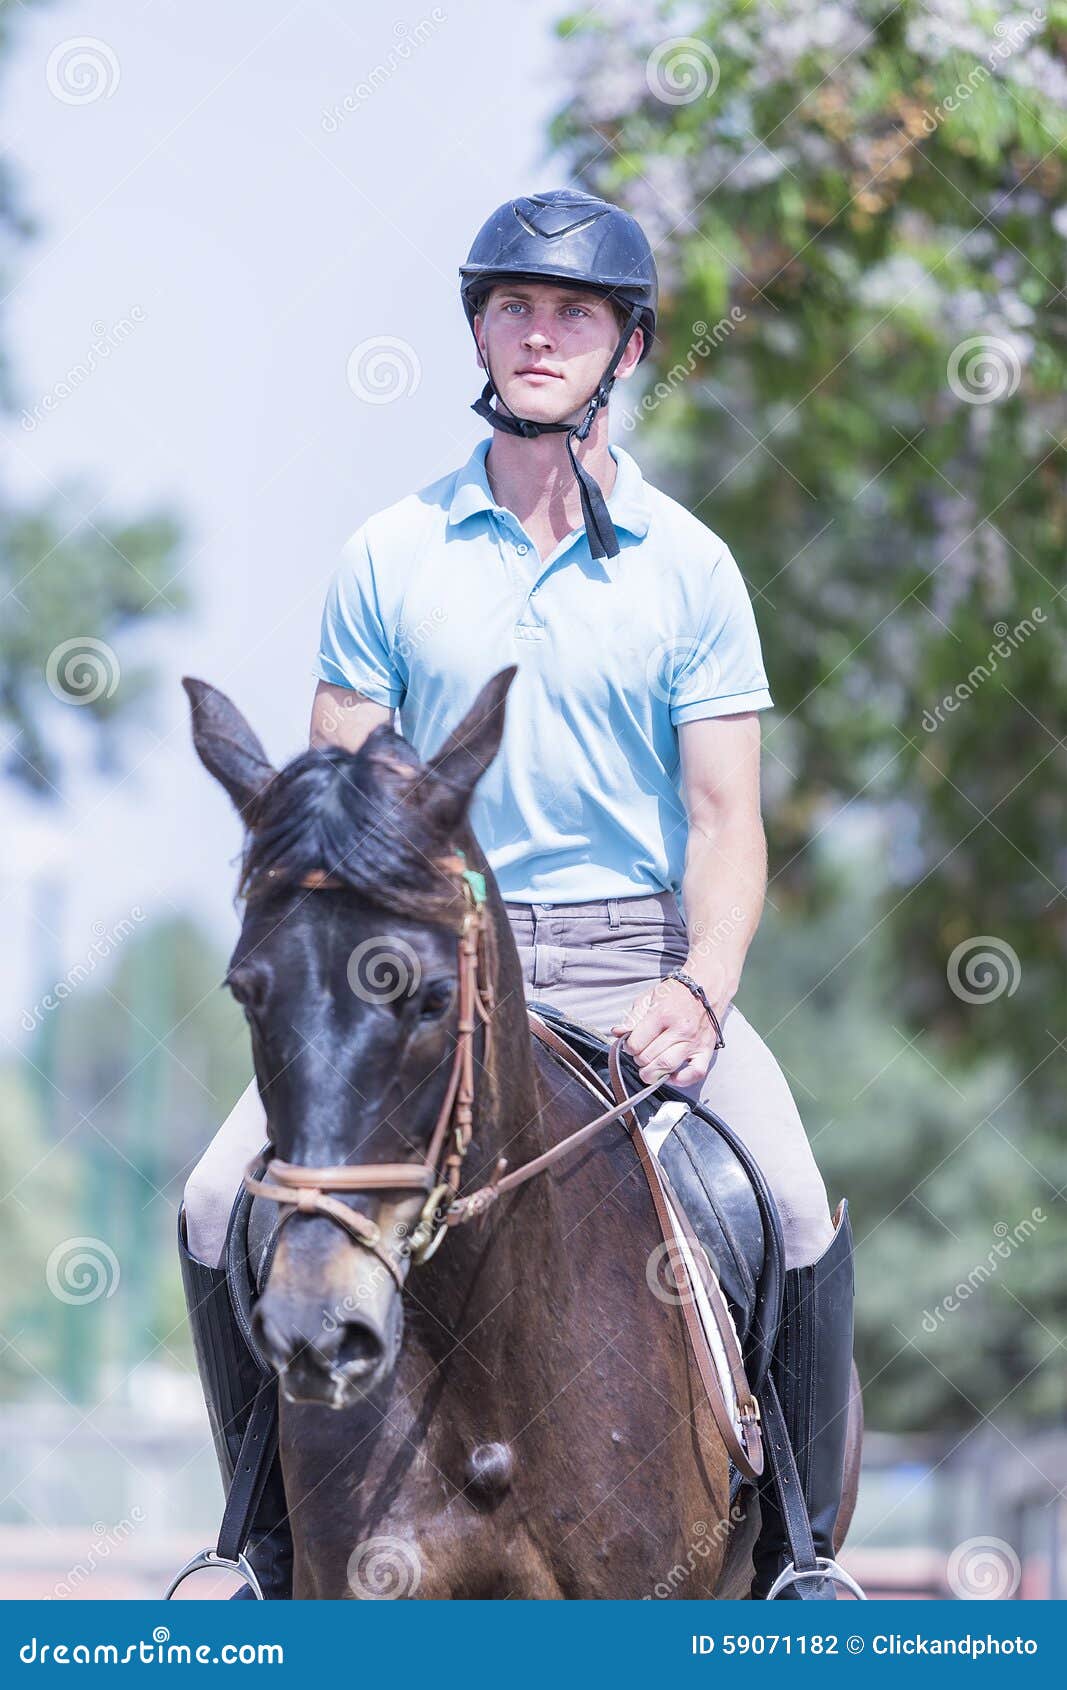 mans face a Riding